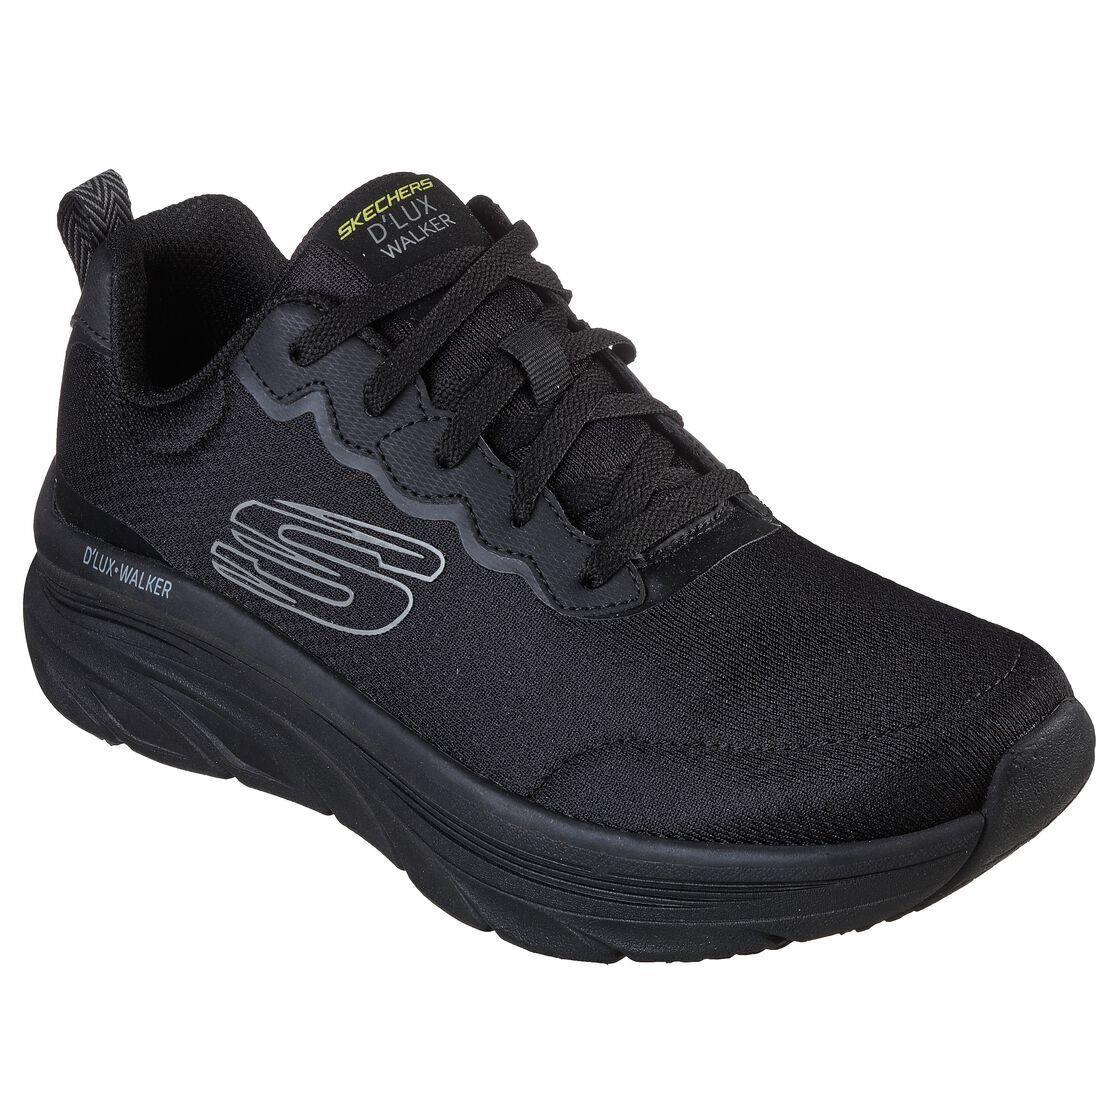 Skechers Black Shoes Men Memory Foam Cushion Sport Comfort Walker Casual 232264